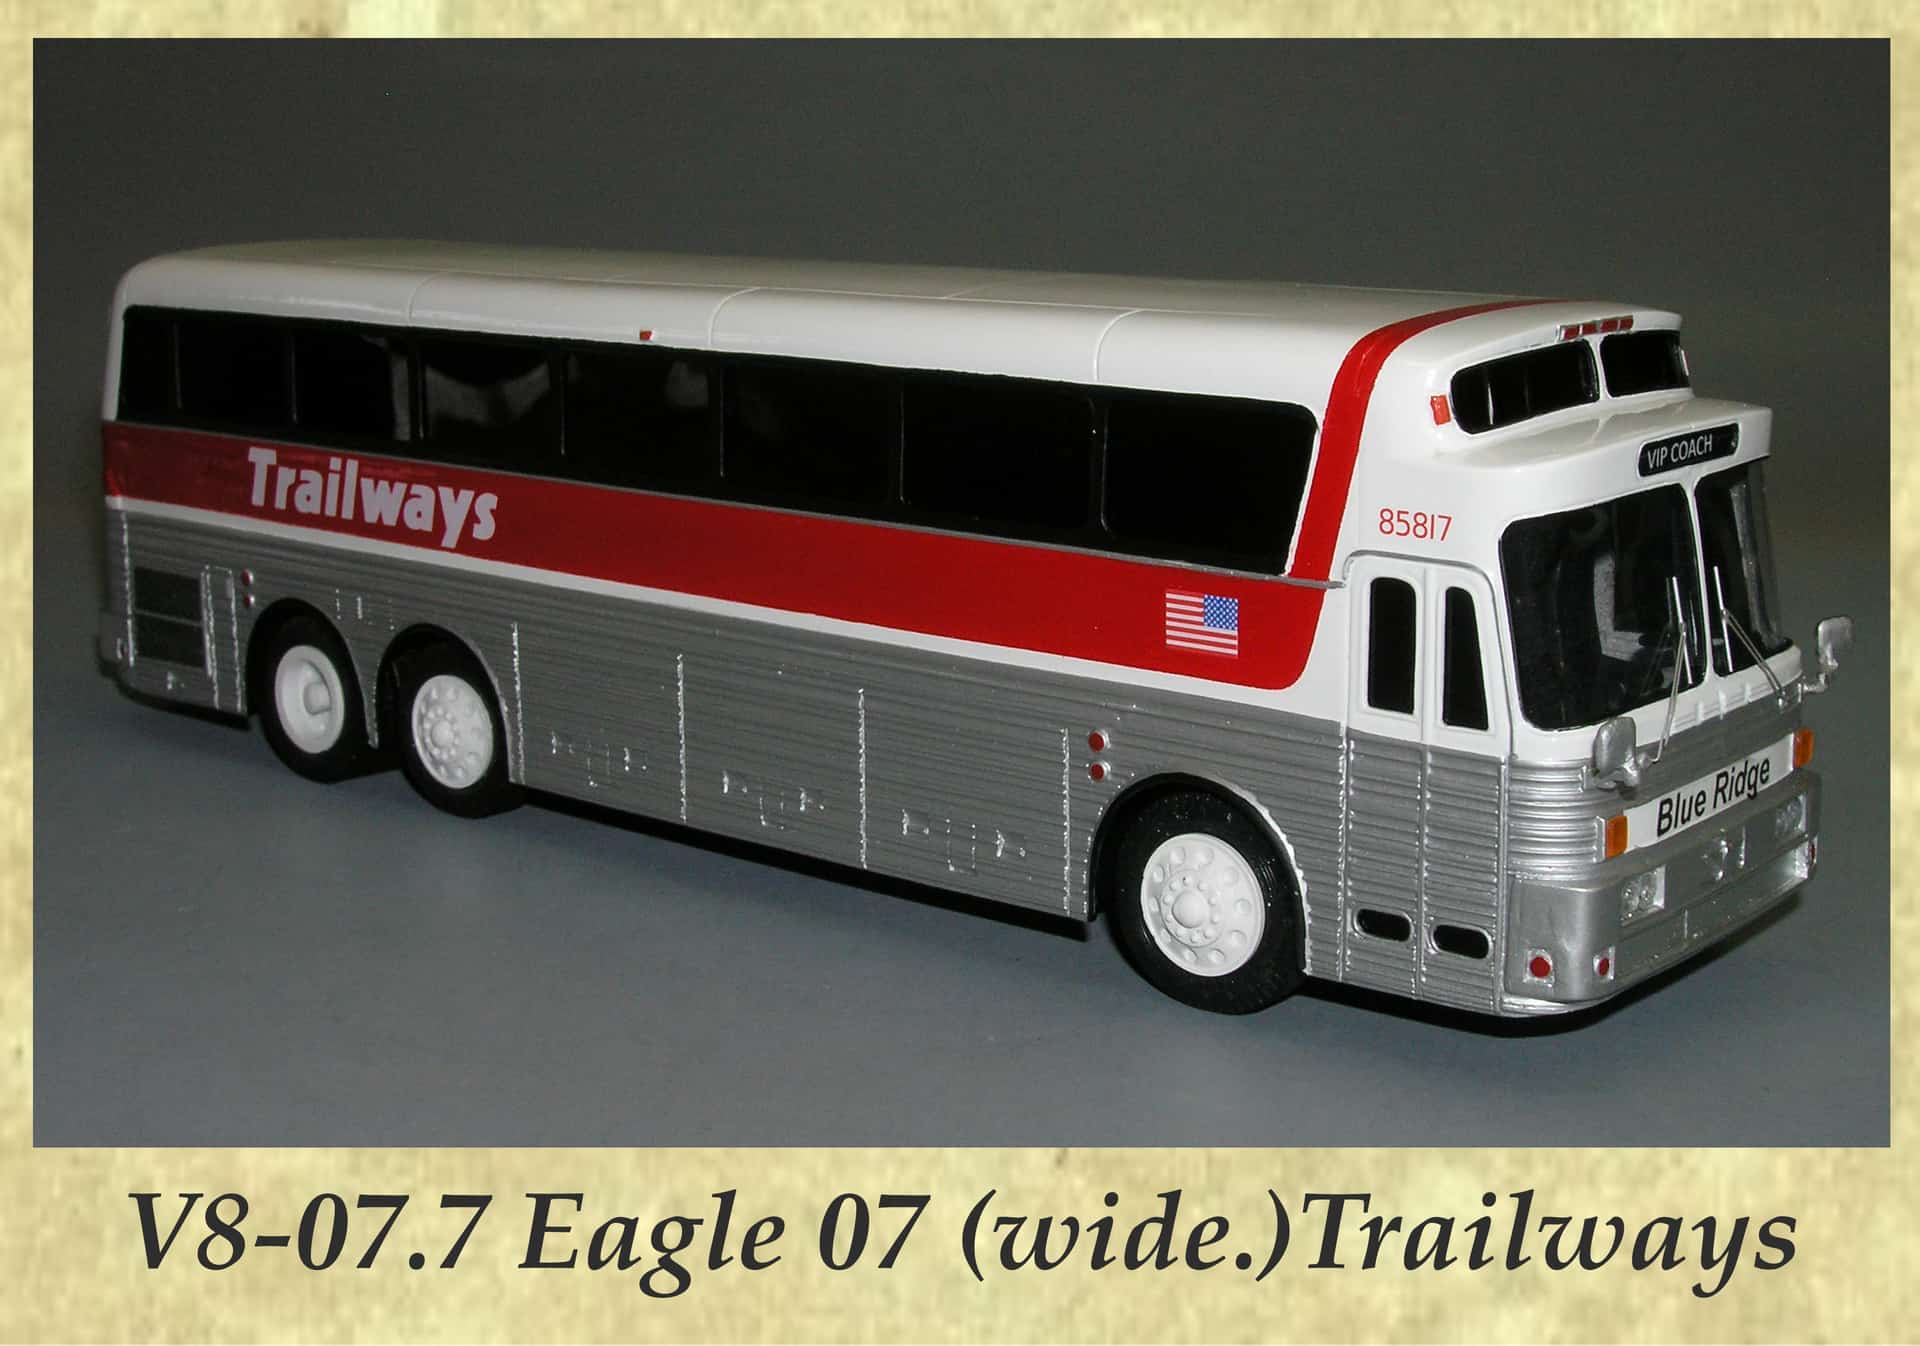 V8-07.7 Eagle 07 (wide.)Trailways